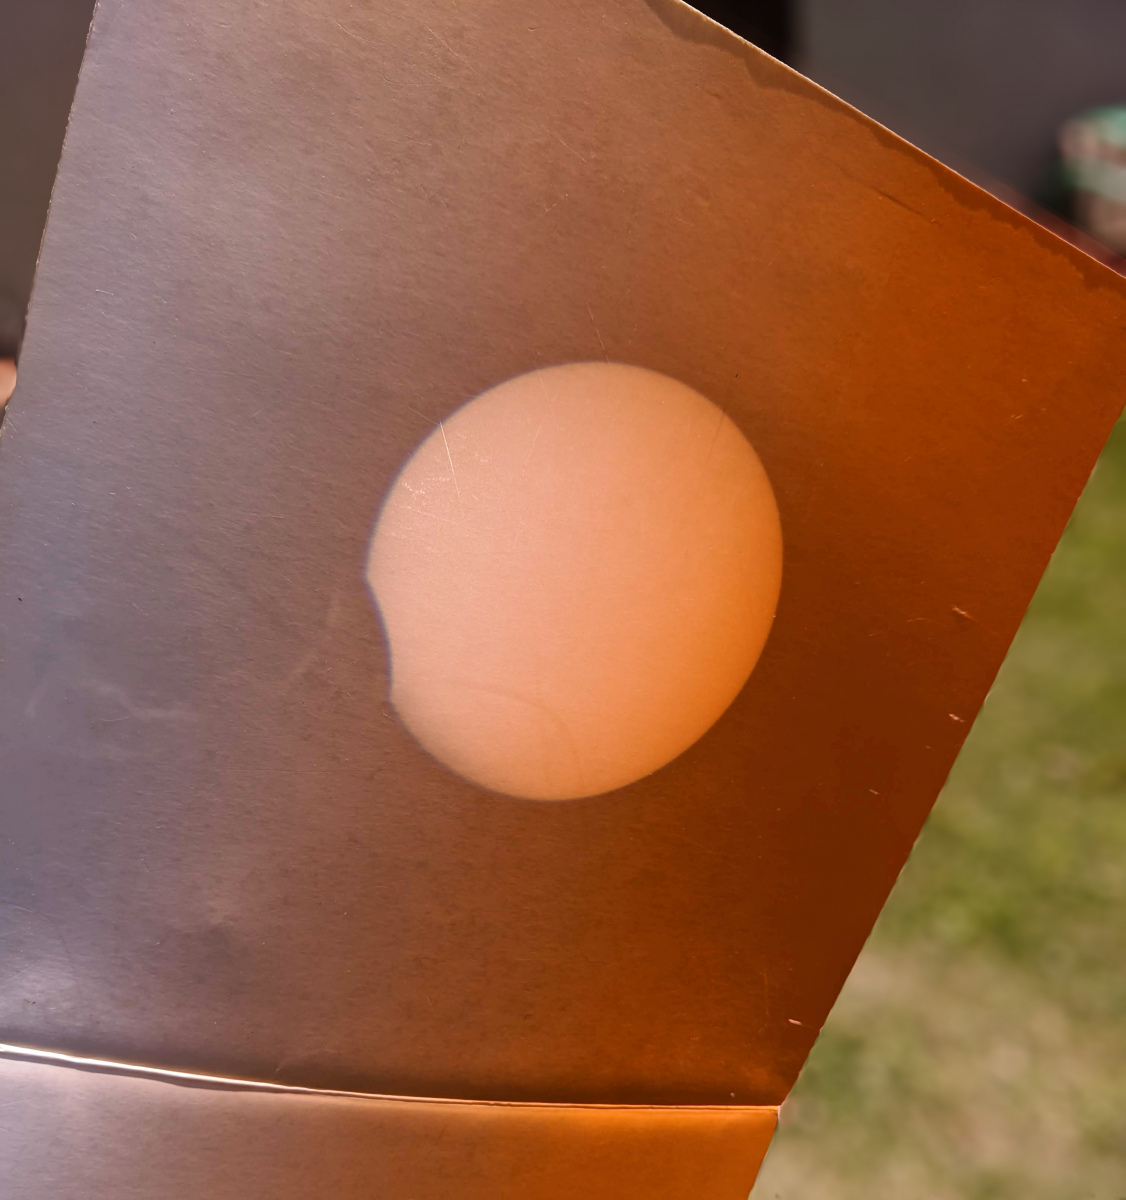 Zatmenie Slnka 10. júna 2021 – Priemet cez Newtonov ďalekohľad